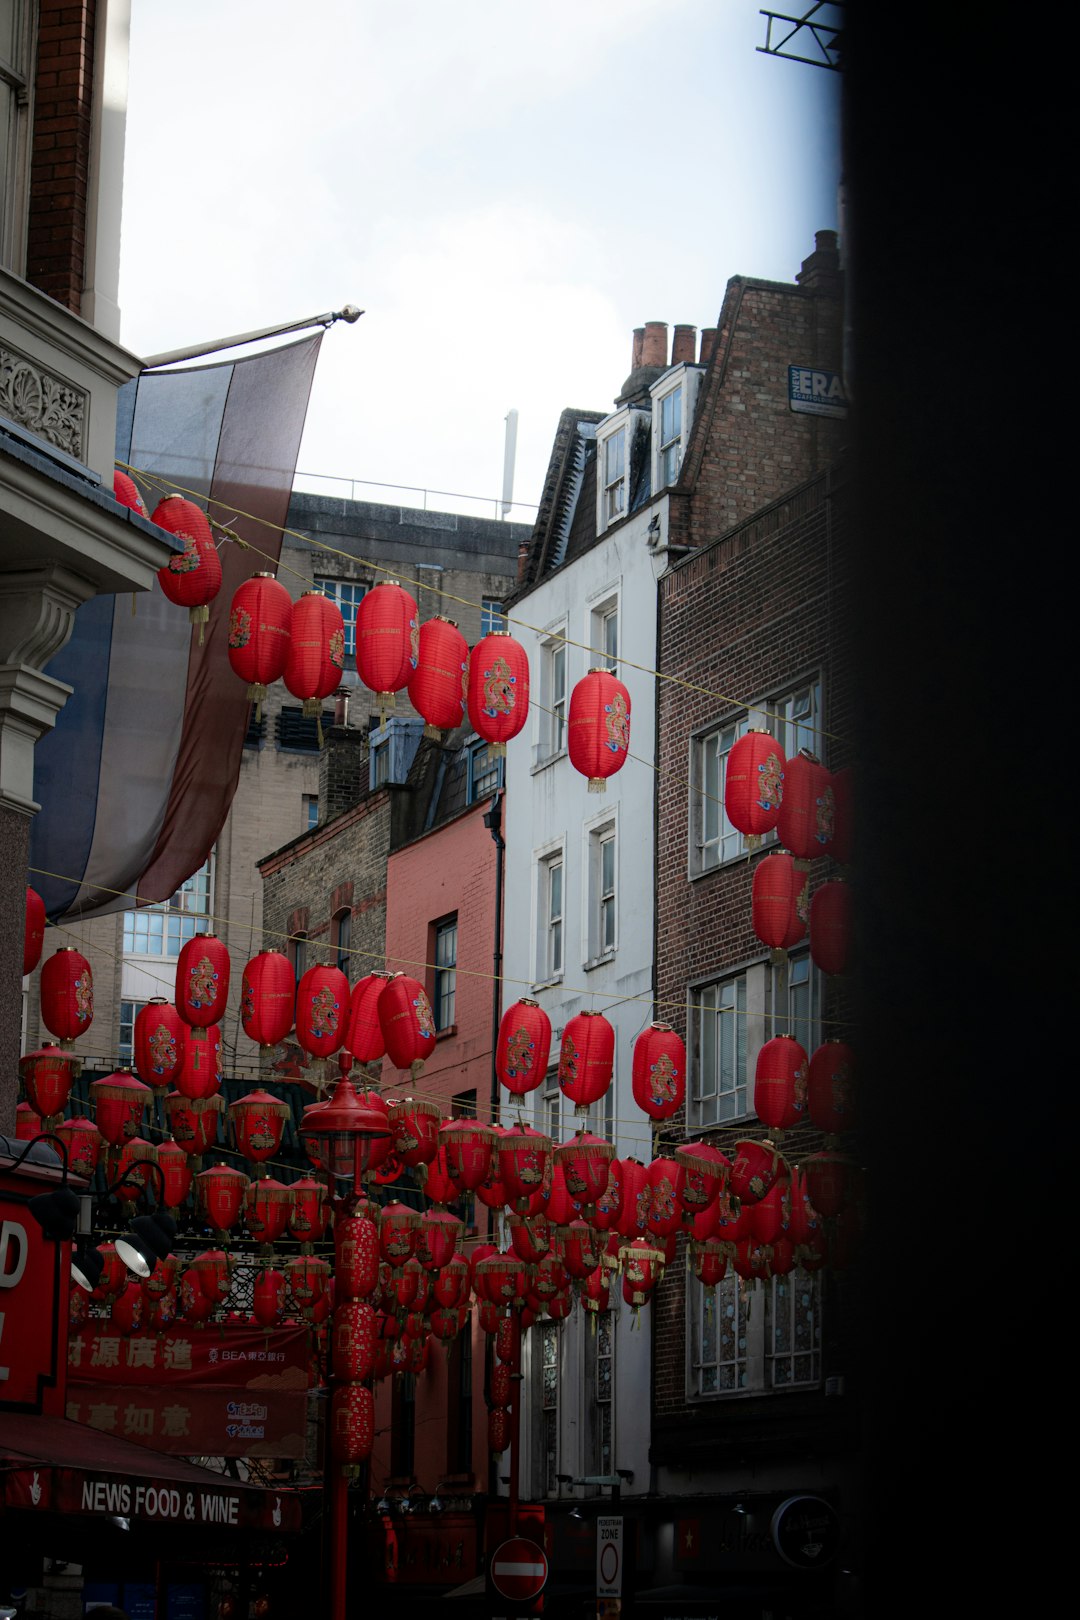 red paper lanterns on street during daytime